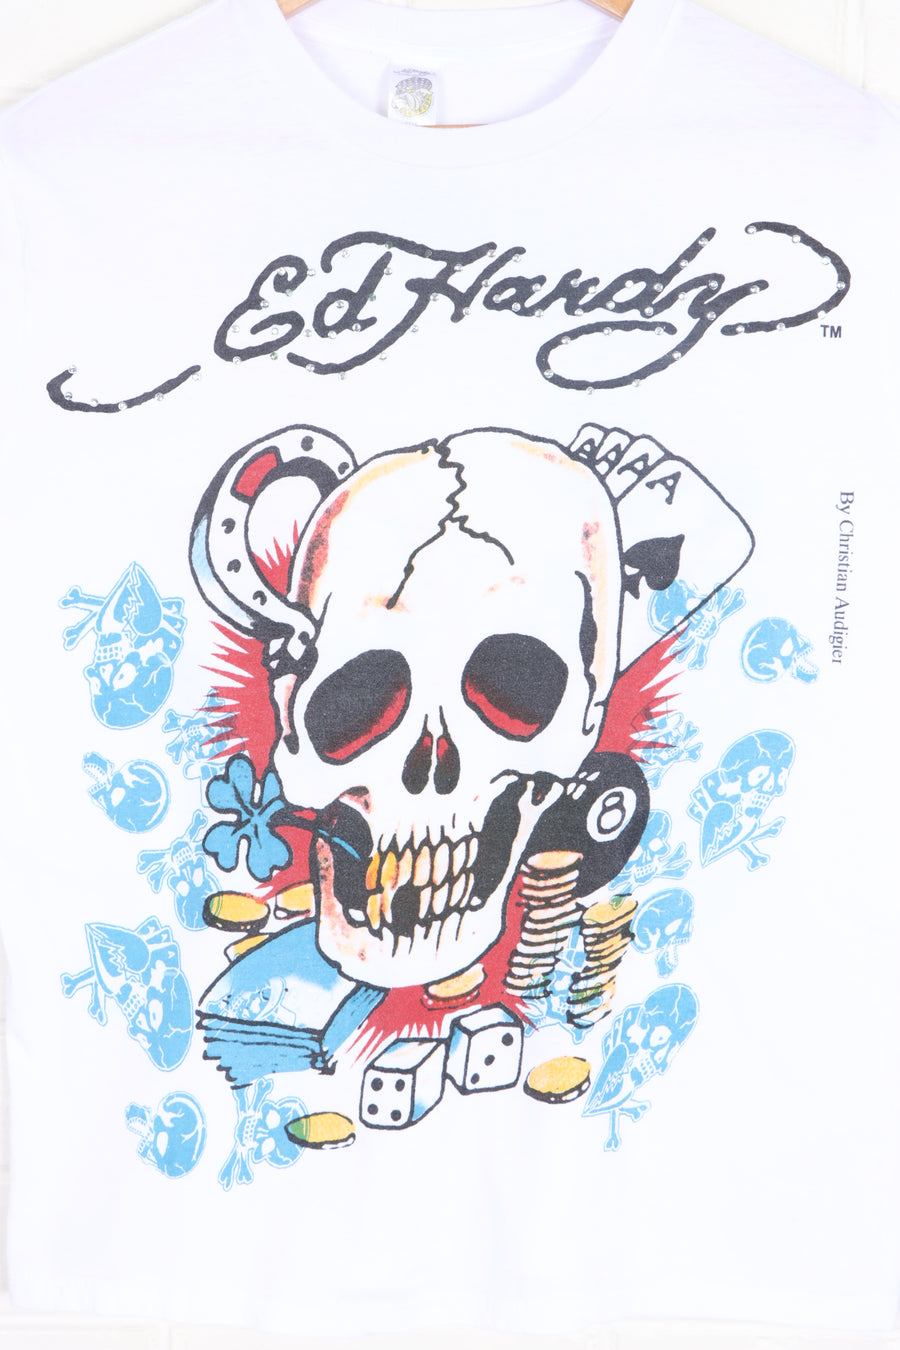 ED HARDY Christian Audigier Skulls Front Back T-Shirt (L)